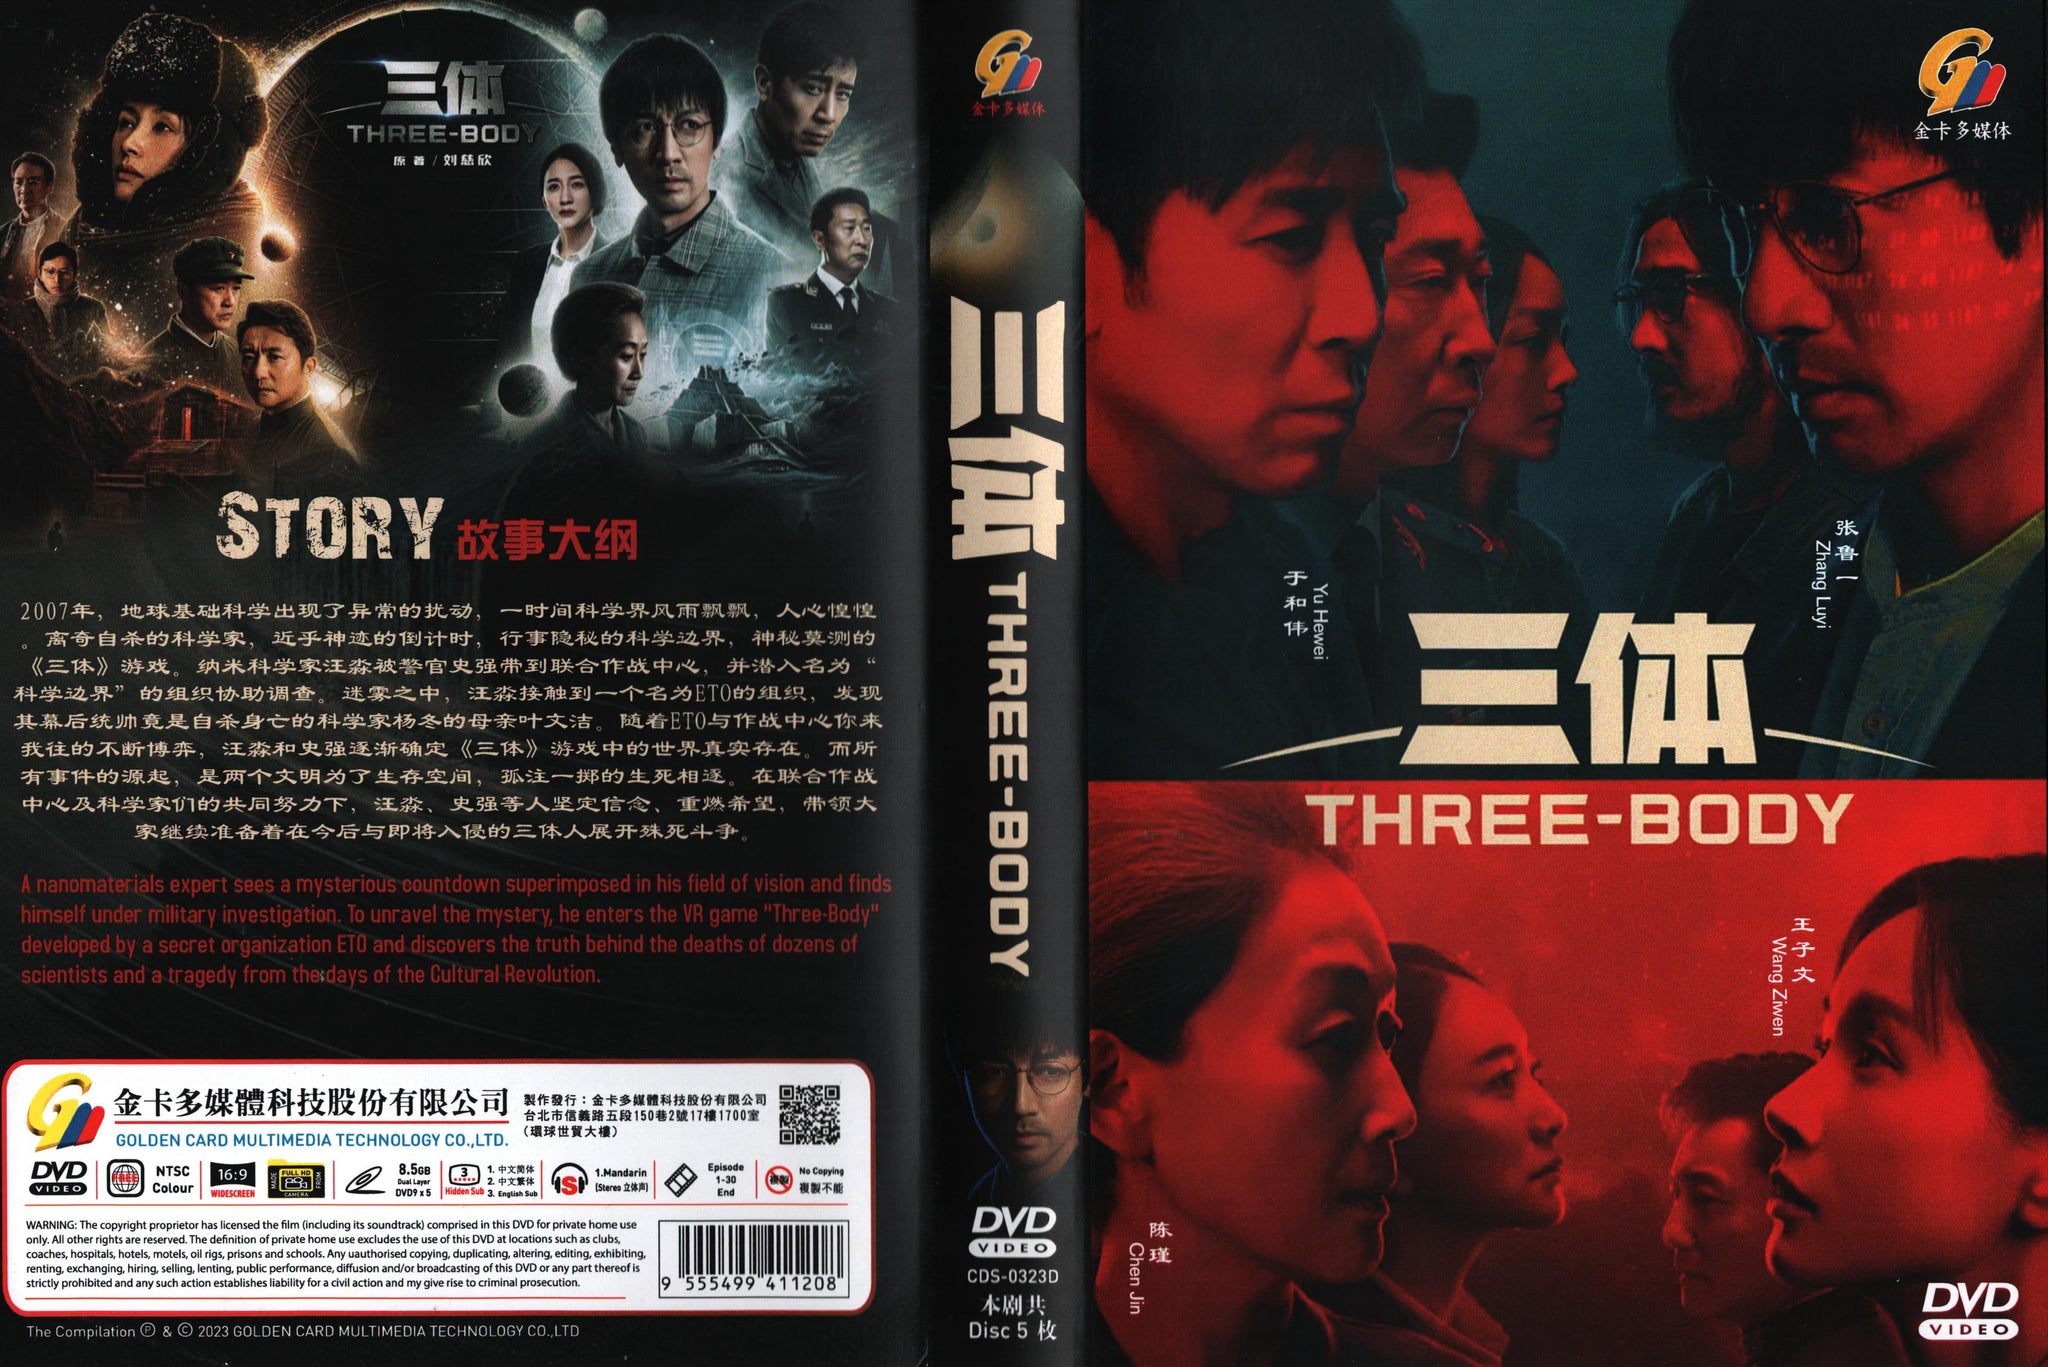 Three-Body, Mainland China, Drama